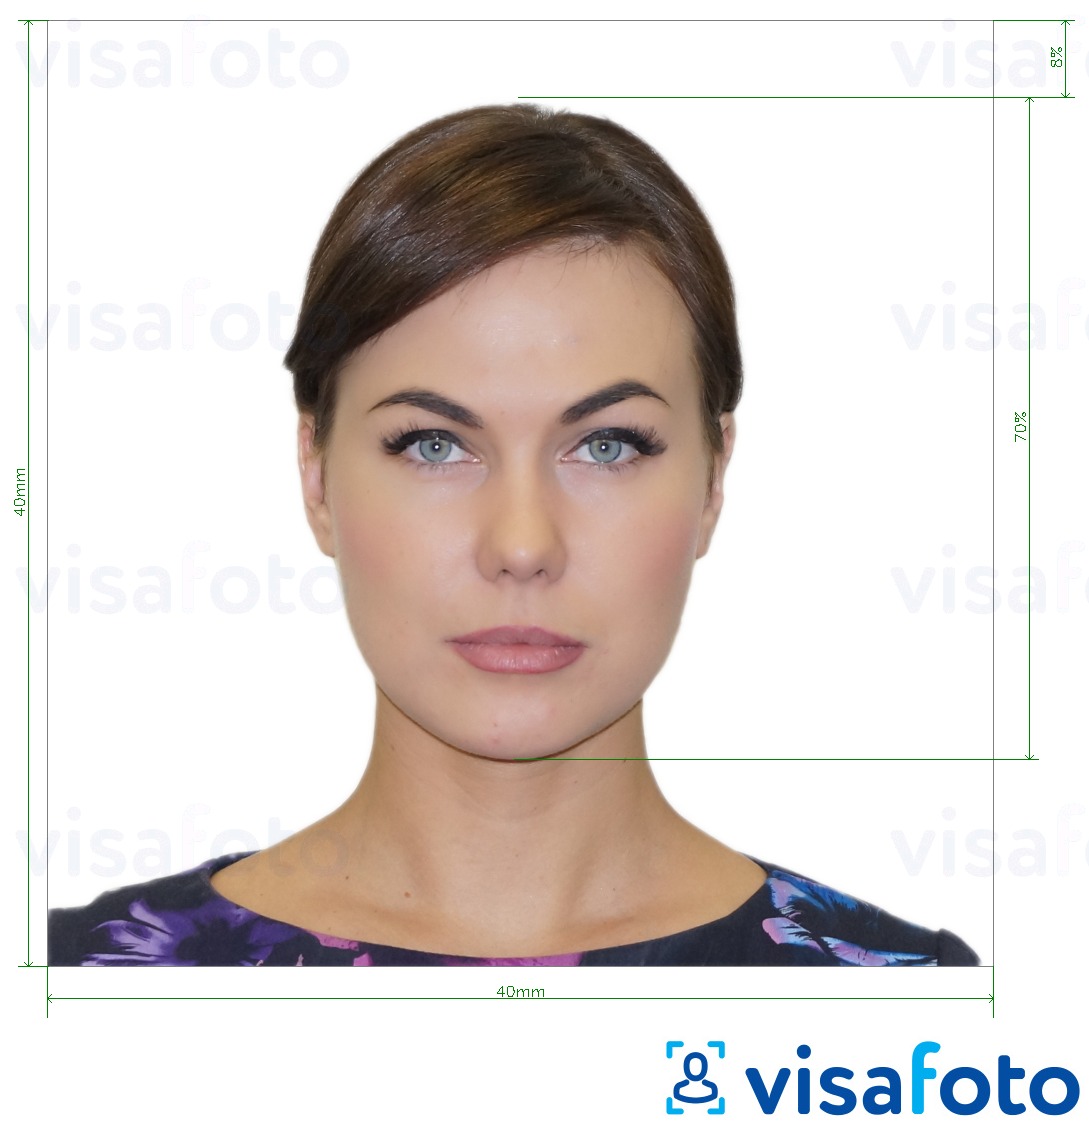 Contoh dari foto untuk Paspor Argentina 4x4 cm (40x40 mm) dengan ukuran spesifikasi yang tepat